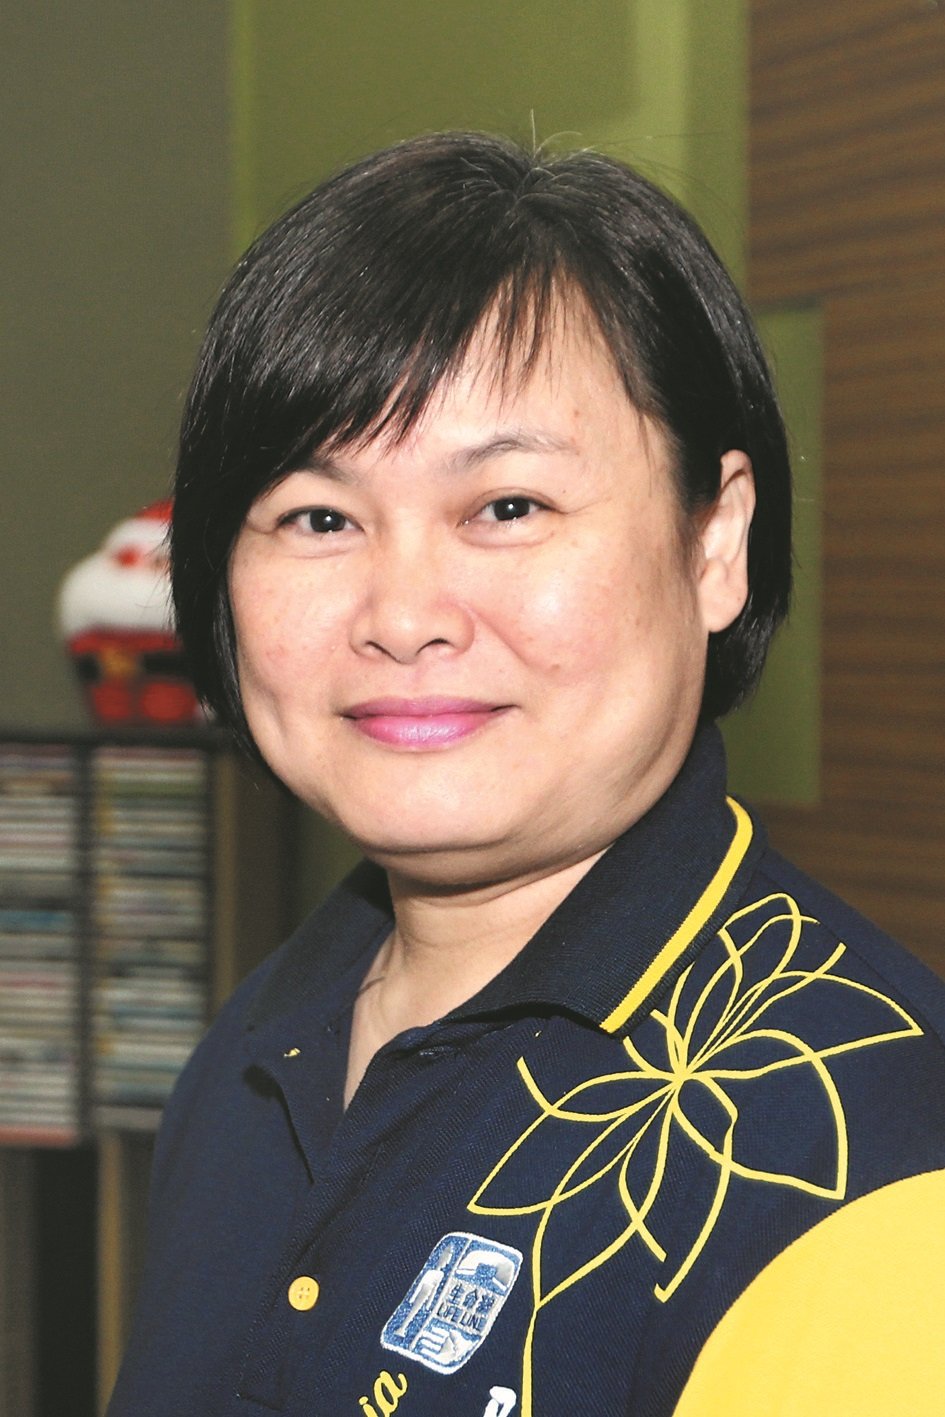 马来西亚性学会理事兼性教育工作者陈云娟